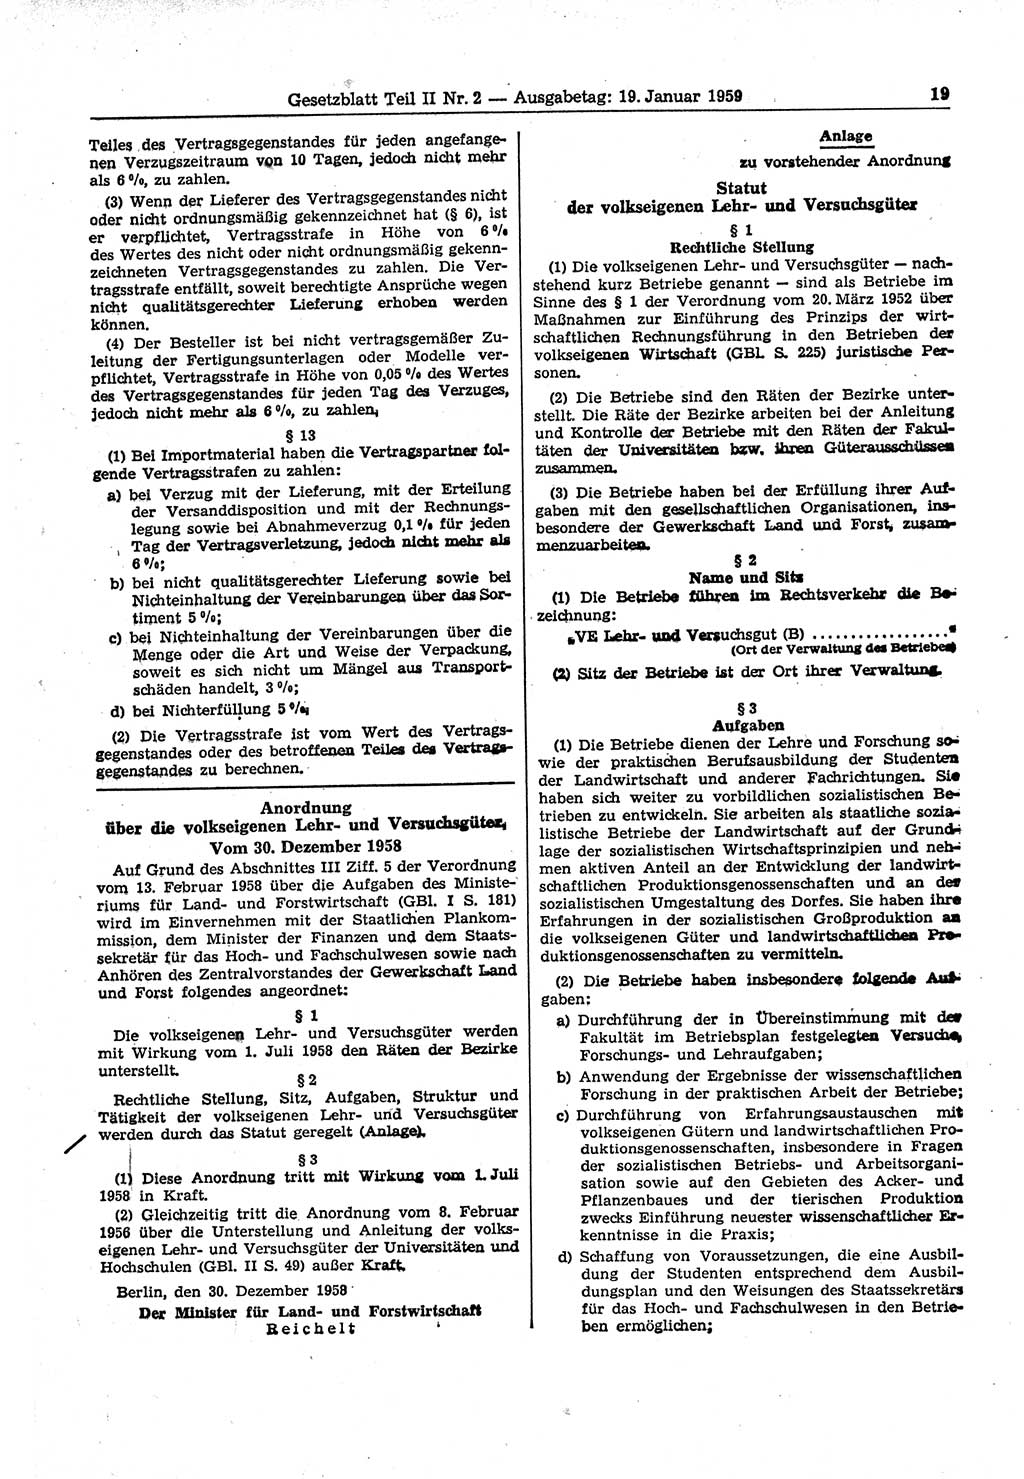 Gesetzblatt (GBl.) der Deutschen Demokratischen Republik (DDR) Teil ⅠⅠ 1959, Seite 19 (GBl. DDR ⅠⅠ 1959, S. 19)